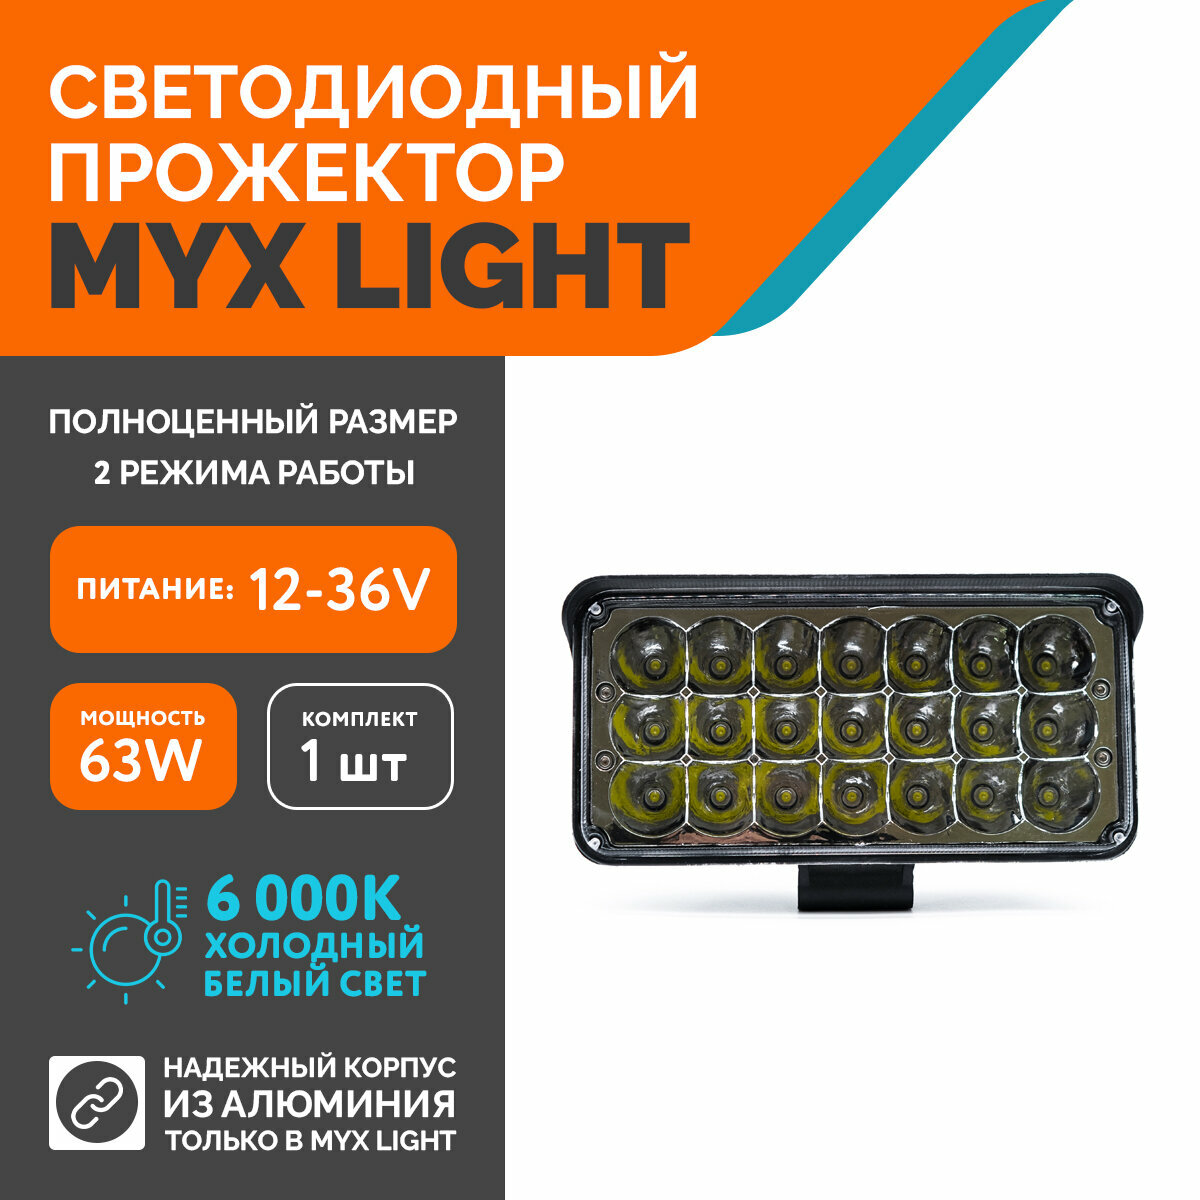 Светодиодная противотуманная фара для авто MYX-Light 12-36V мощность 45W 6000K прожектор дневные ходовые огни для легковых и грузовых авто джипов квадроциклов 1шт